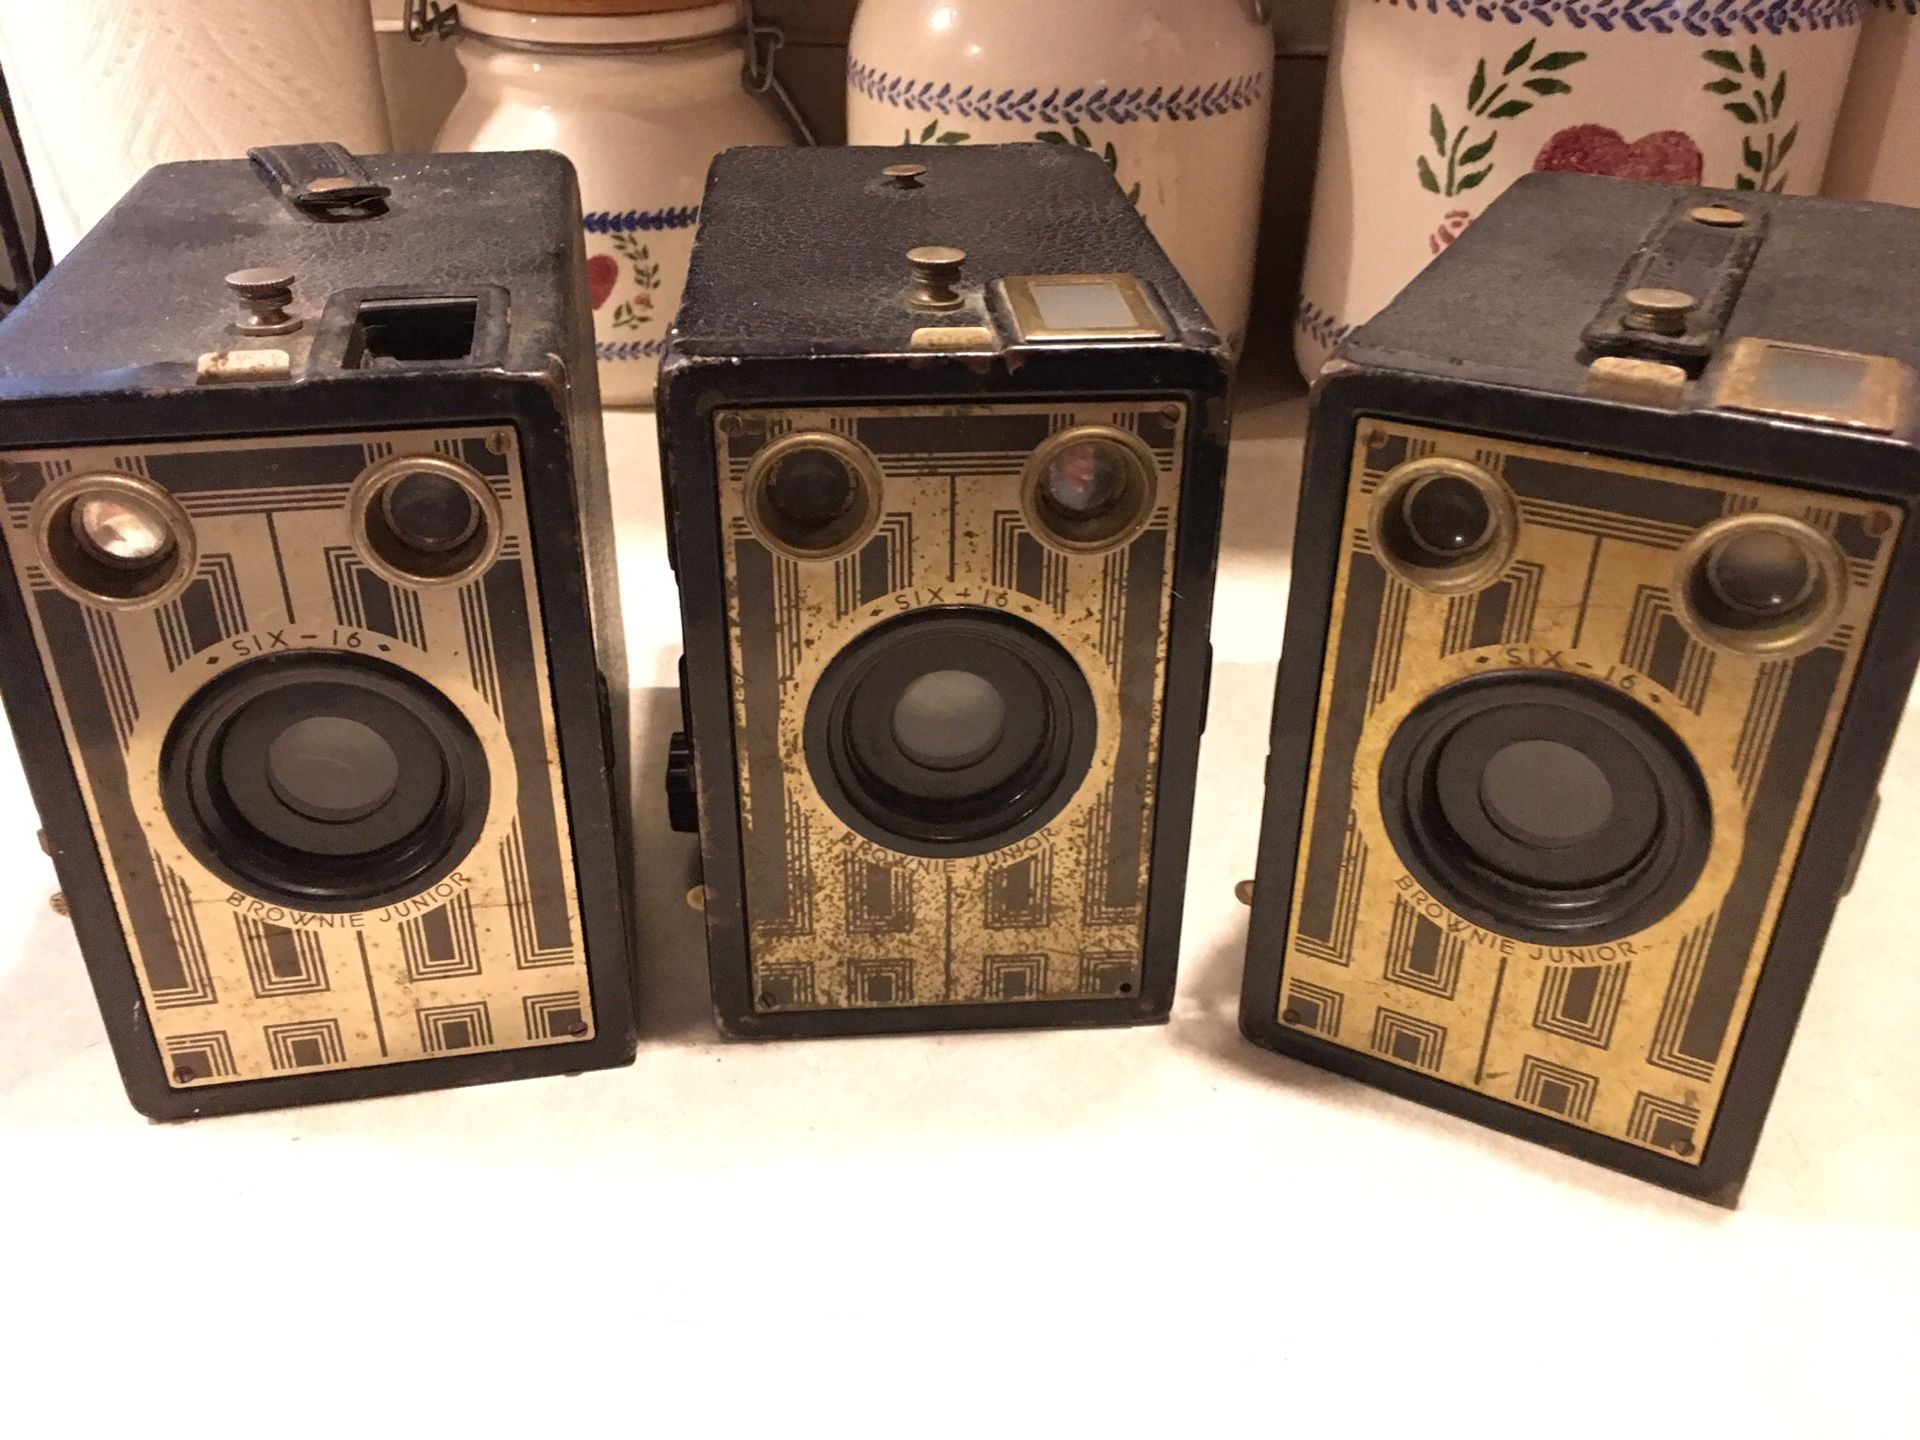 Vintage brownie cameras